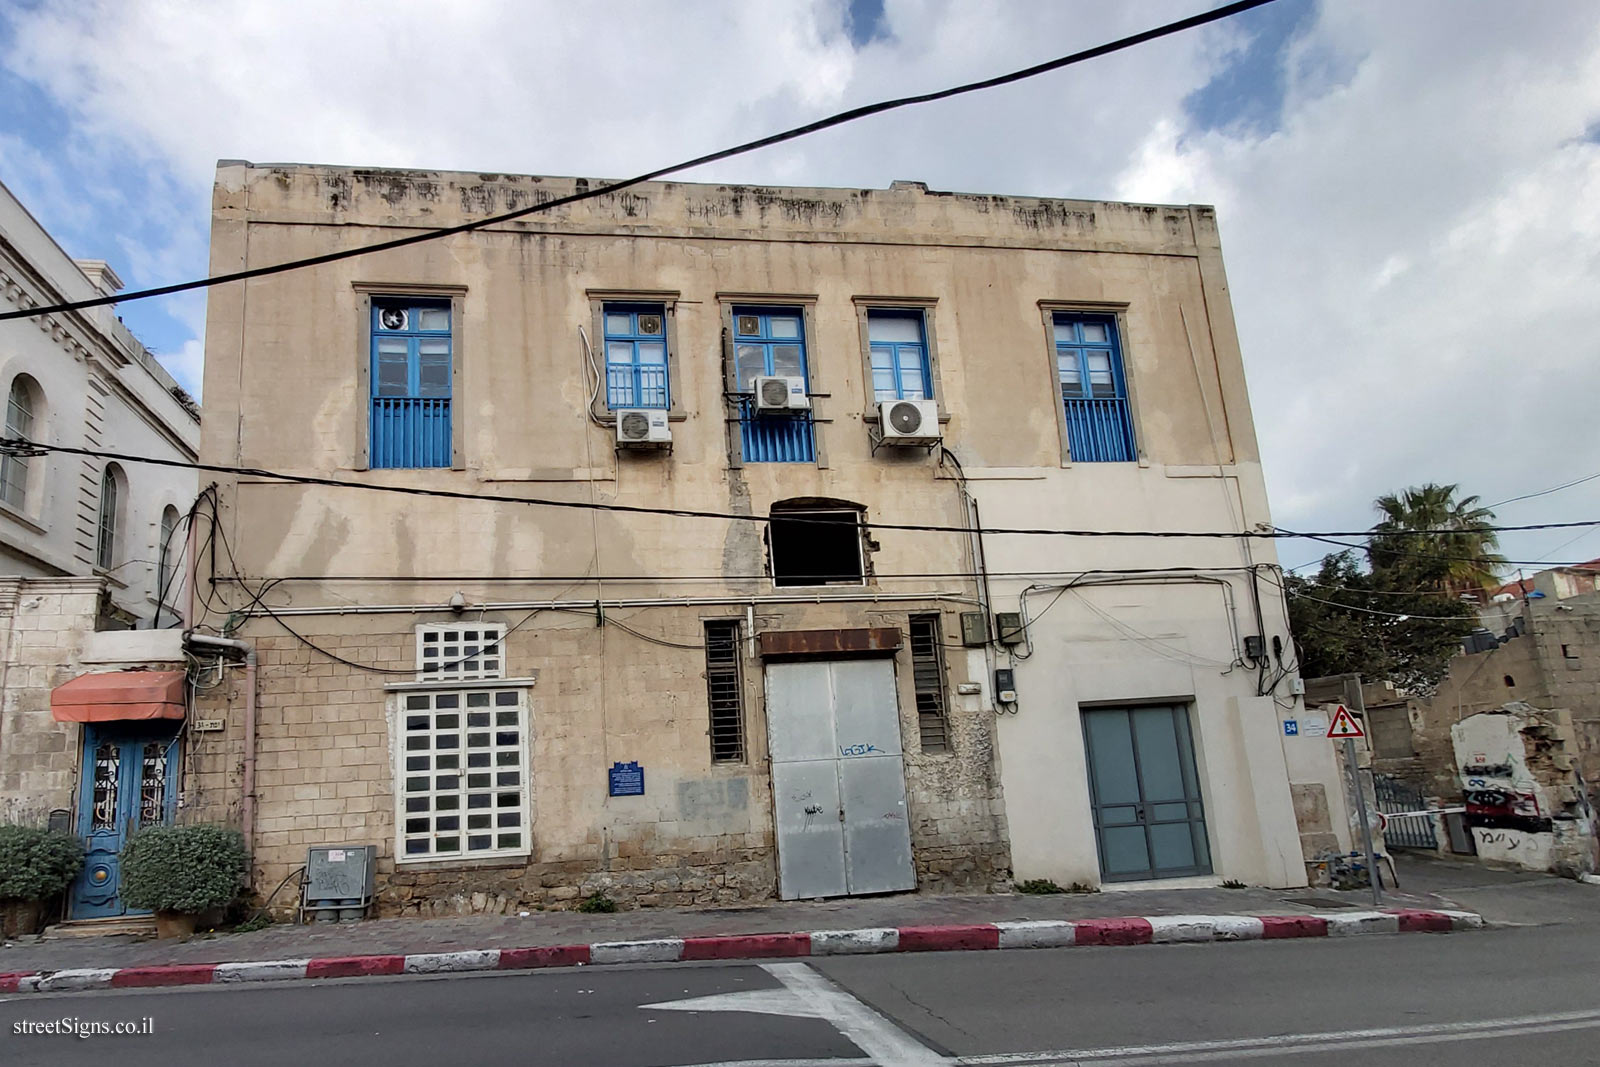 Heritage Sites in Israel - The pioneer house - Yefet St 34, Tel Aviv-Yafo, Israel